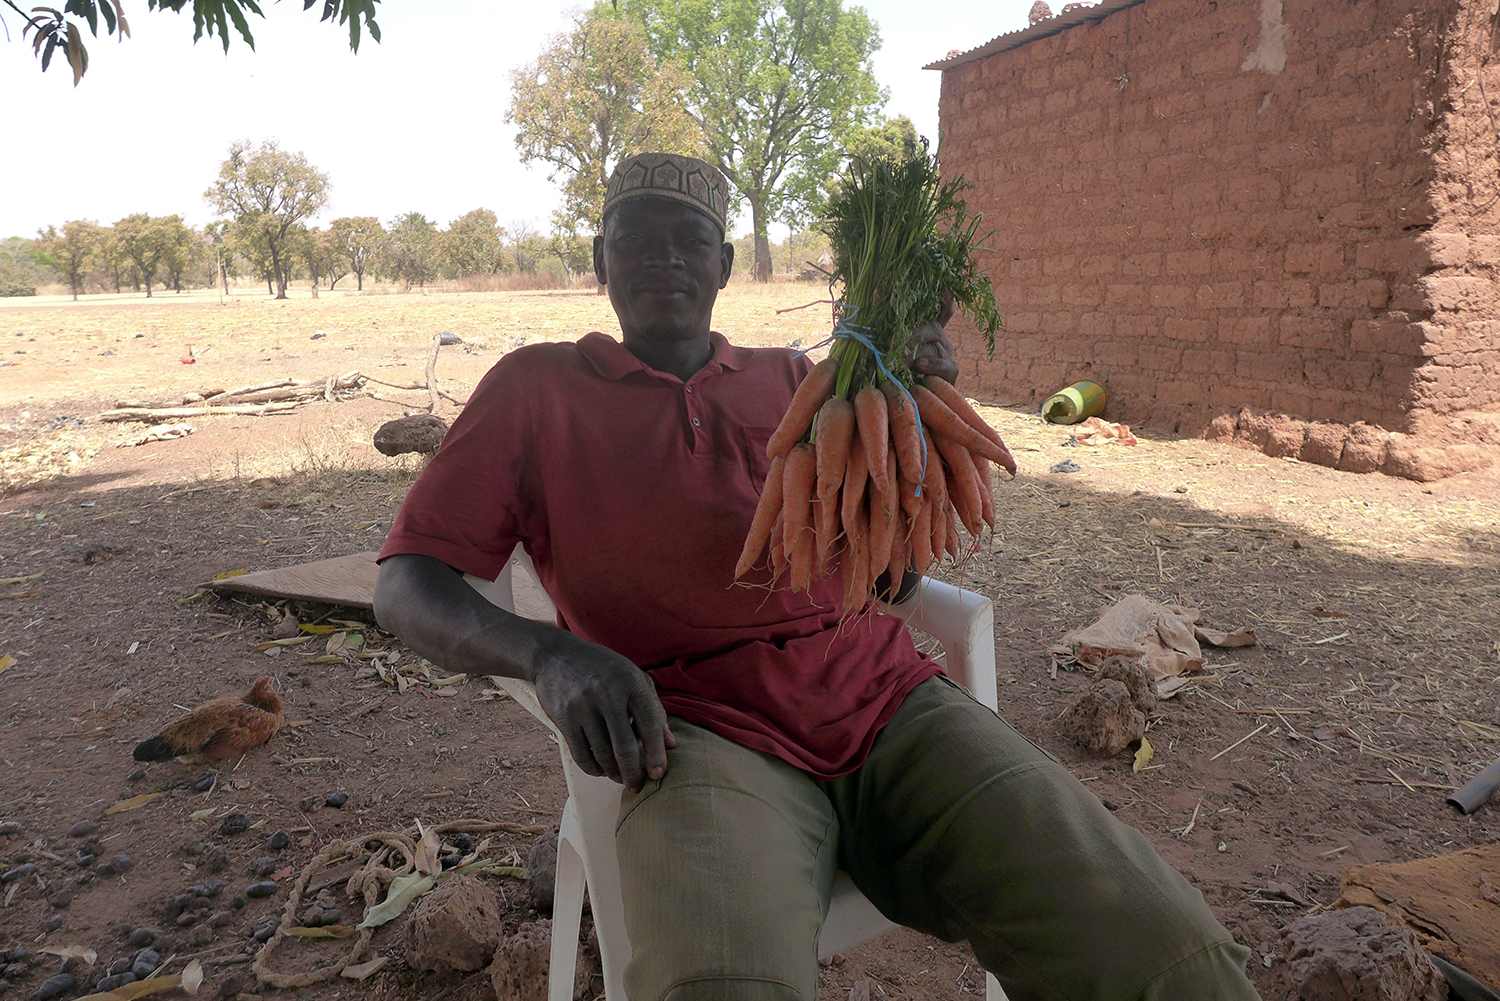 Impossible de repartir les mains vides. Khalifa WATARA offre à l’envoyée spéciale des globe-reporters des carottes qu’il cultive. Elles sont très bonnes !